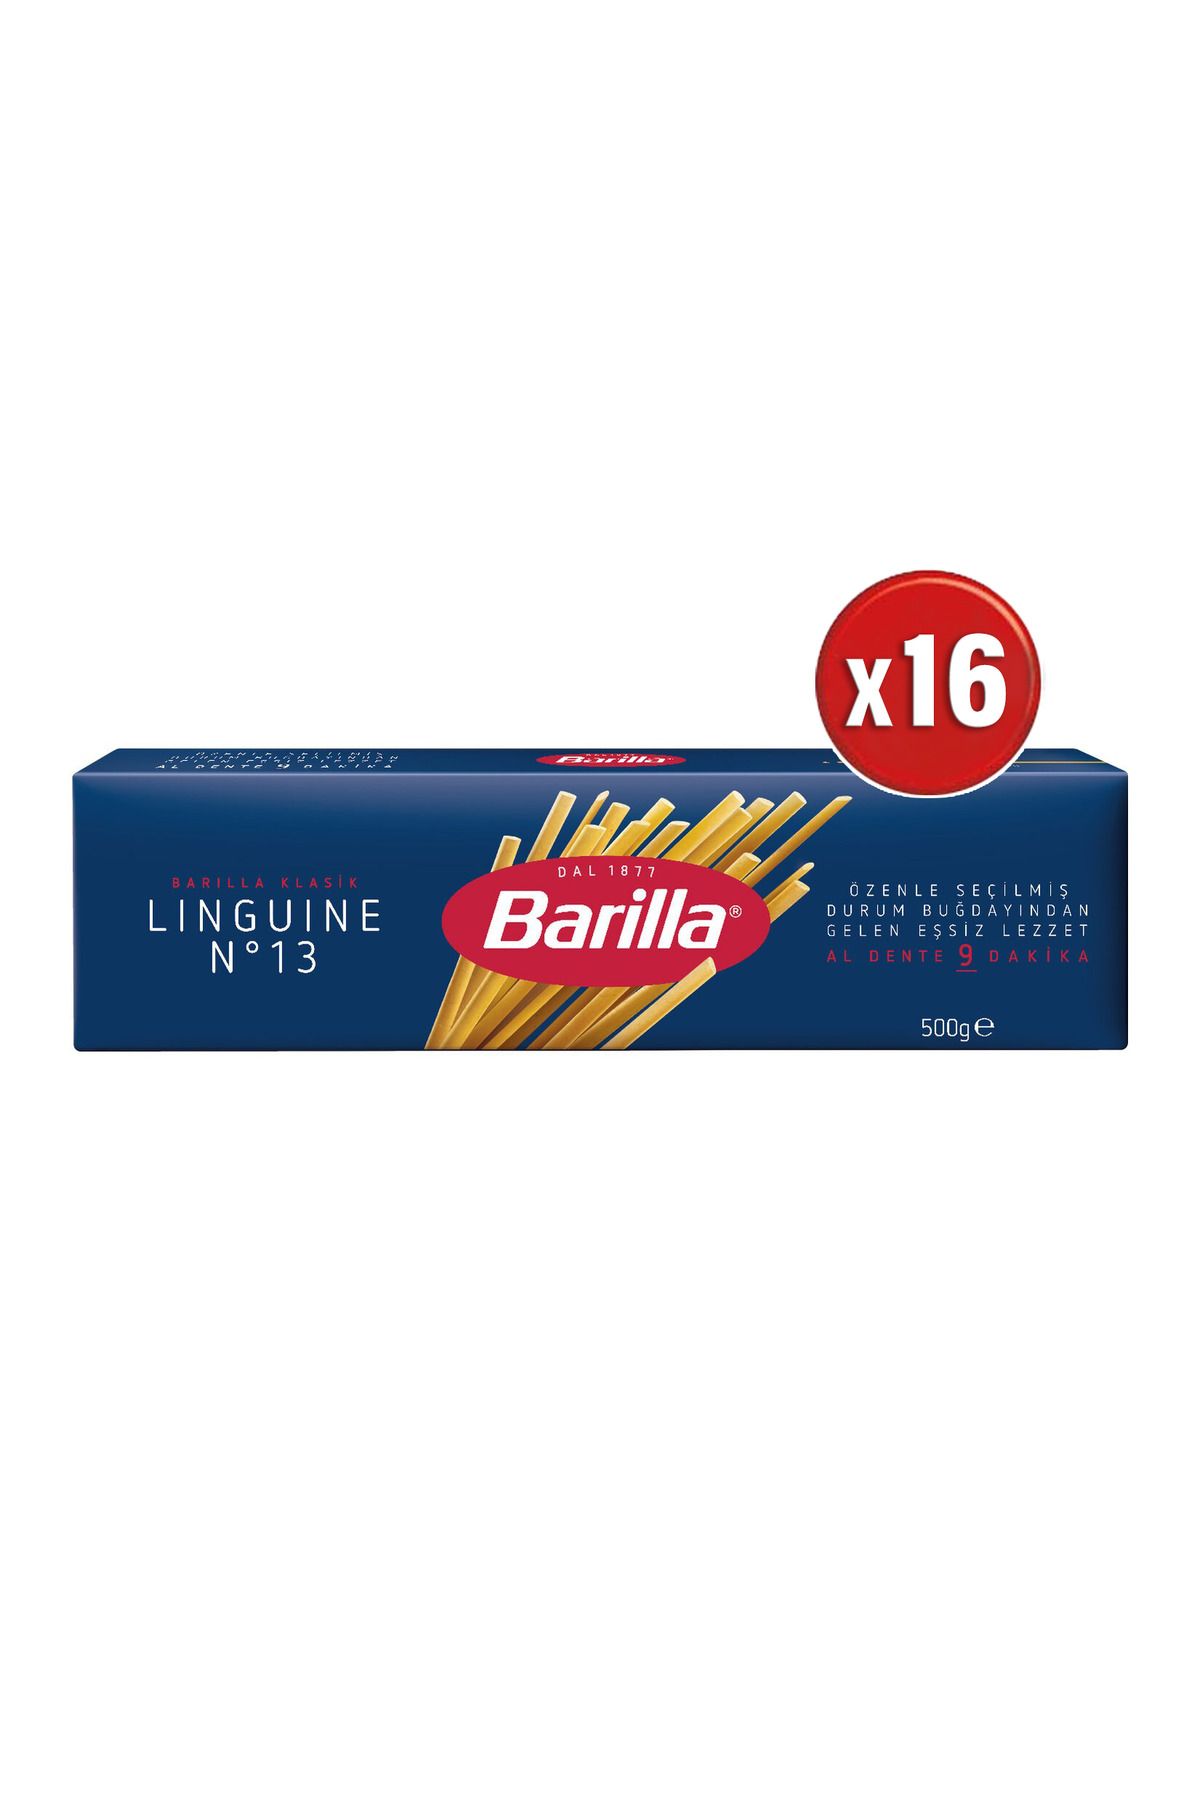 Barilla Linguine (Yassı) Spagetti Makarna No.13 500 G x 16 adet (1 koli)